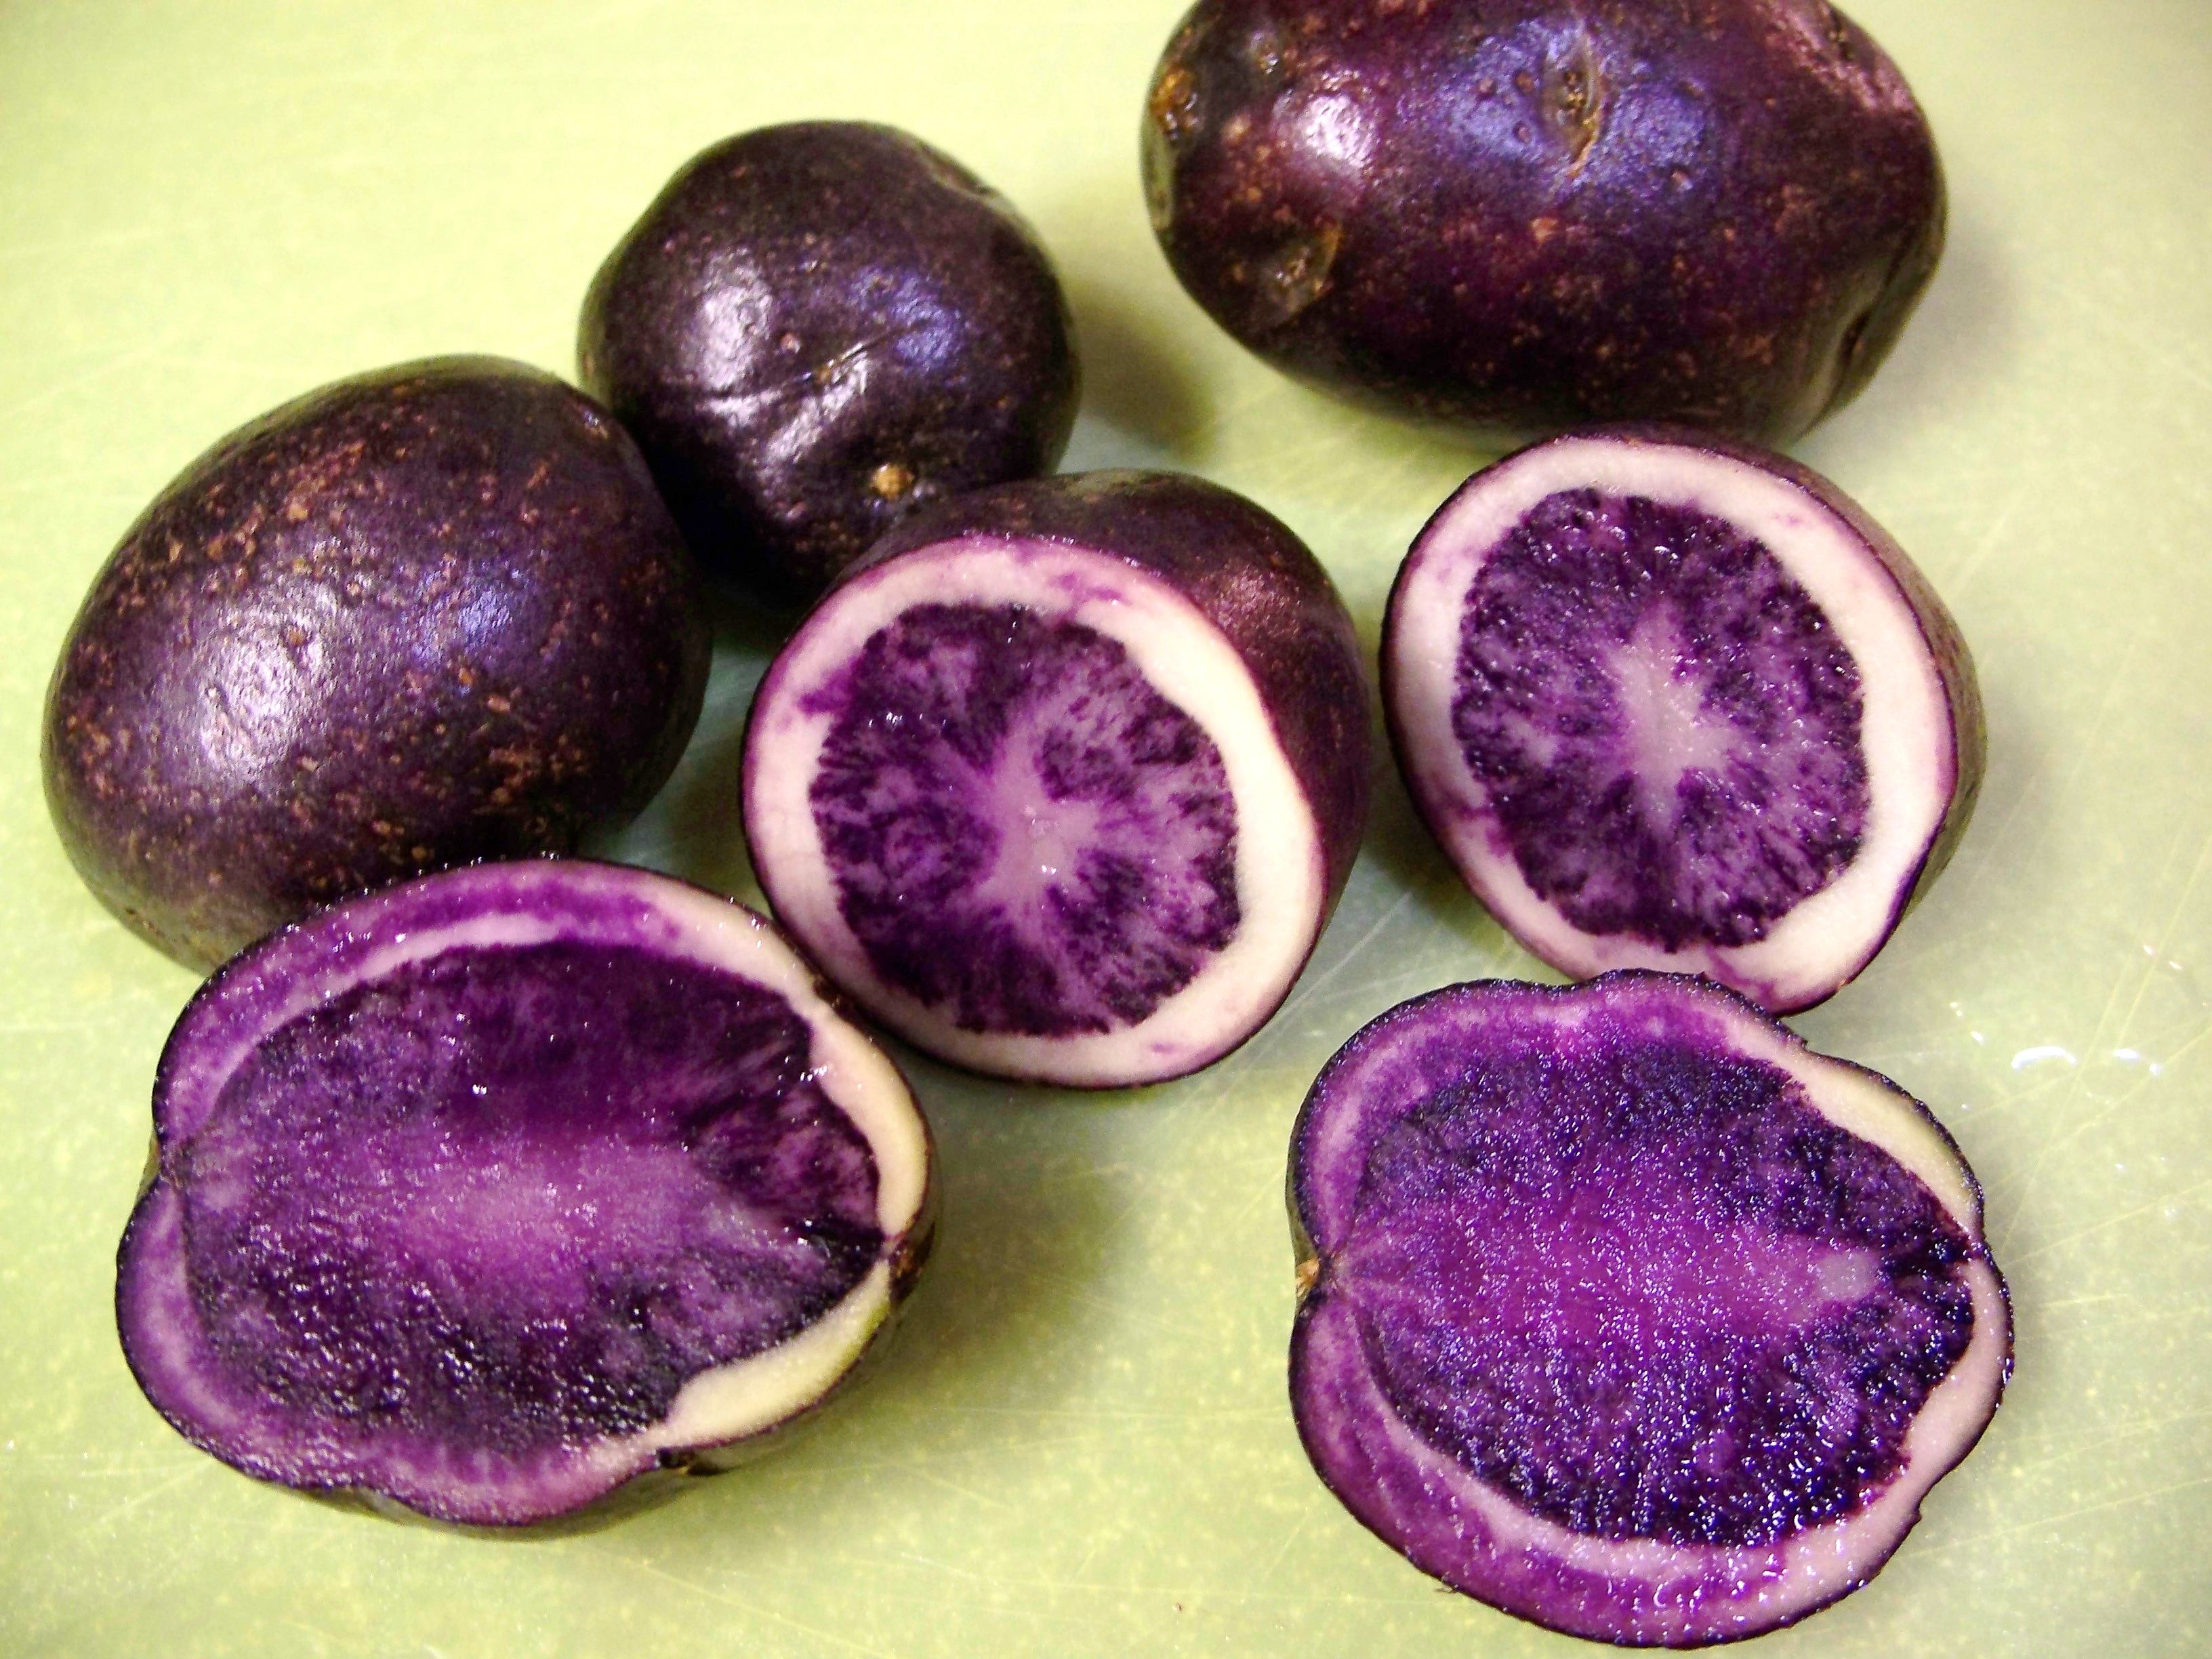 purple-potato